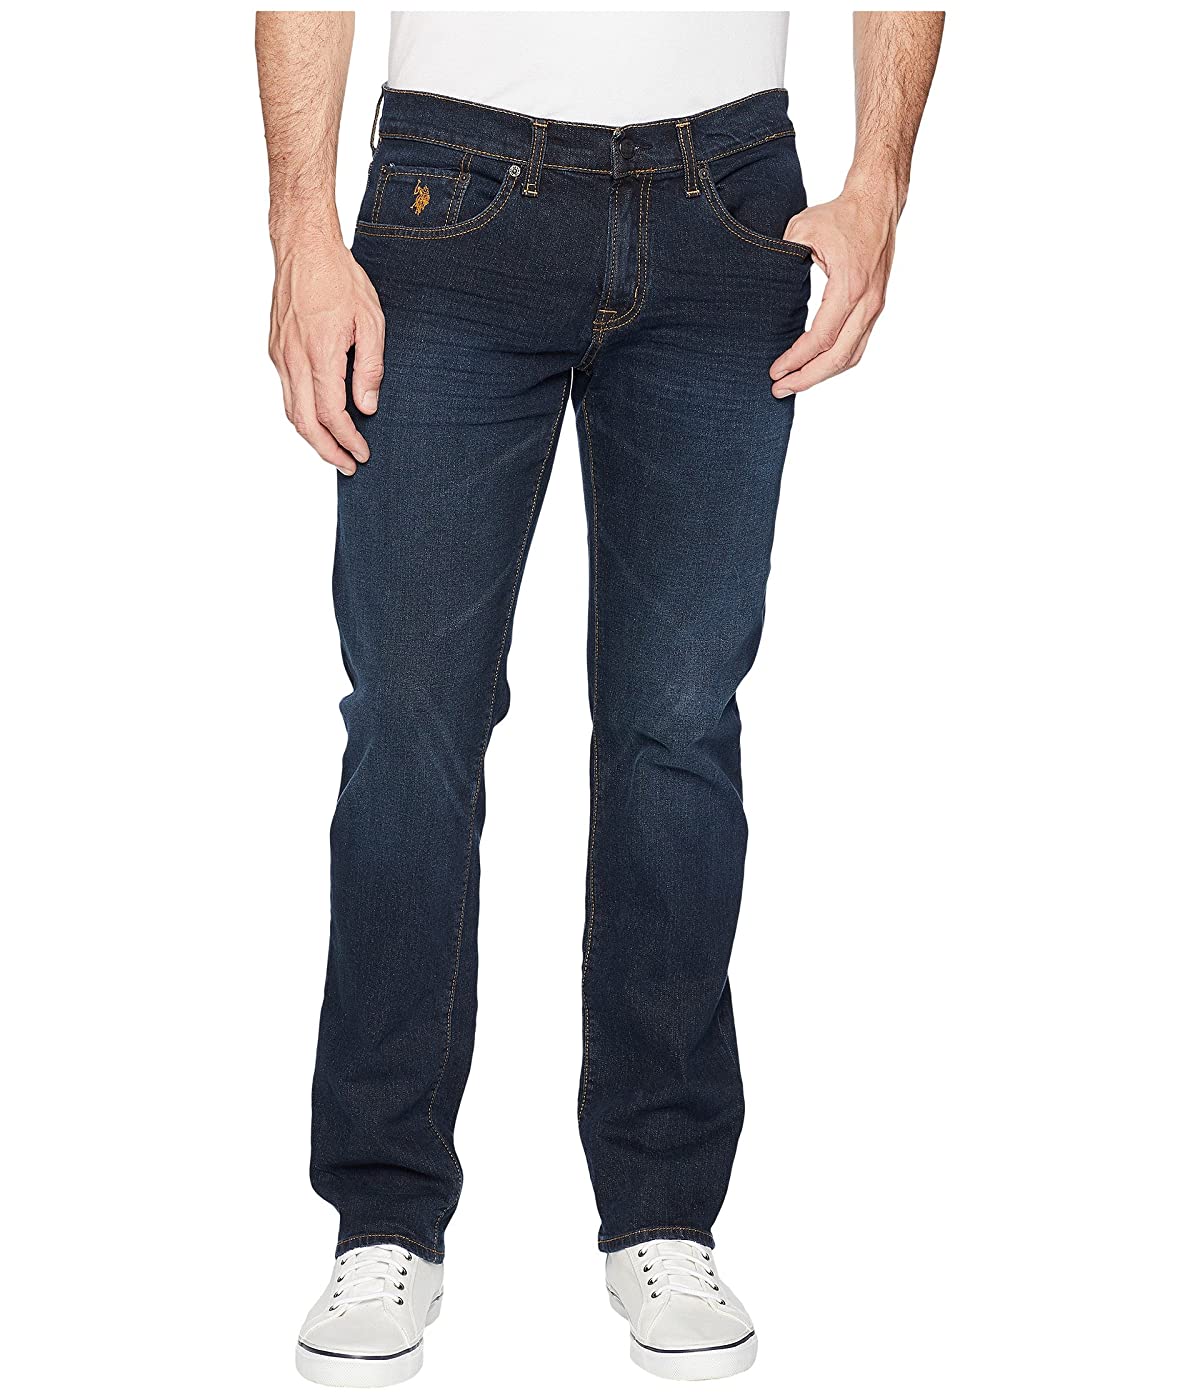 Polo Assn джинсы мужские